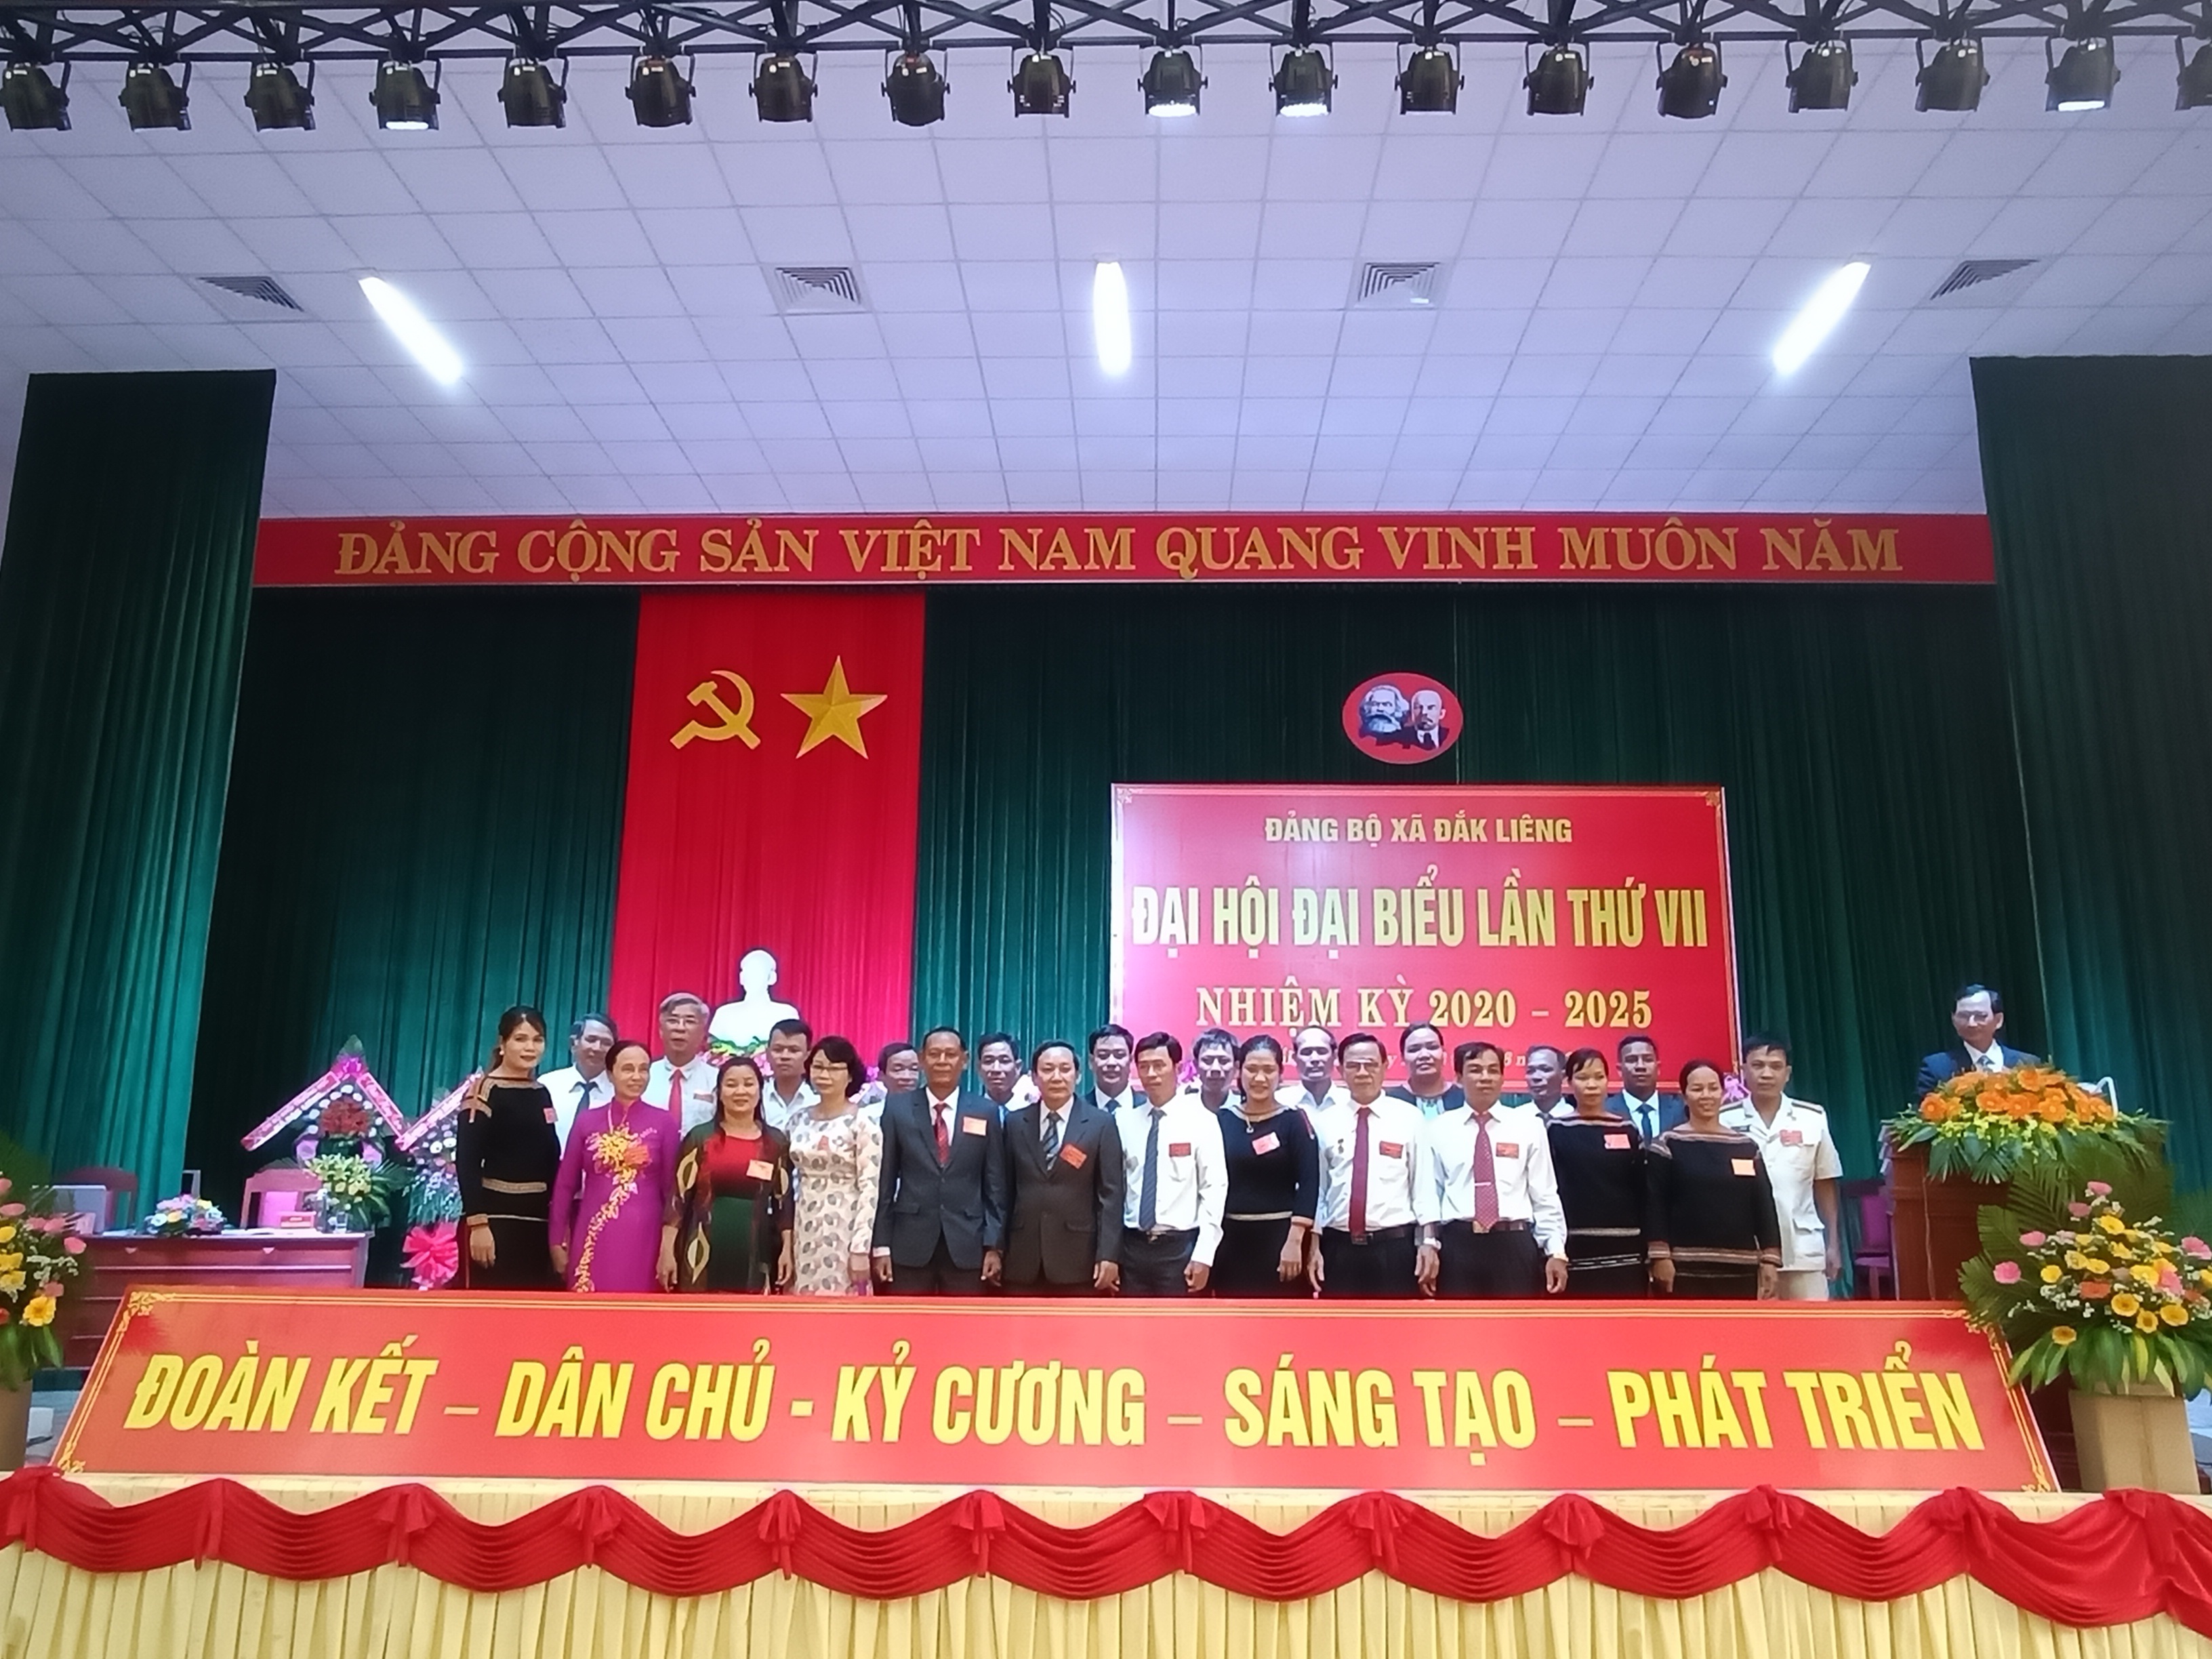 Đại hội đại biểu Đảng bộ xã Đắk Liêng nhiệm kỳ 2020 - 2025